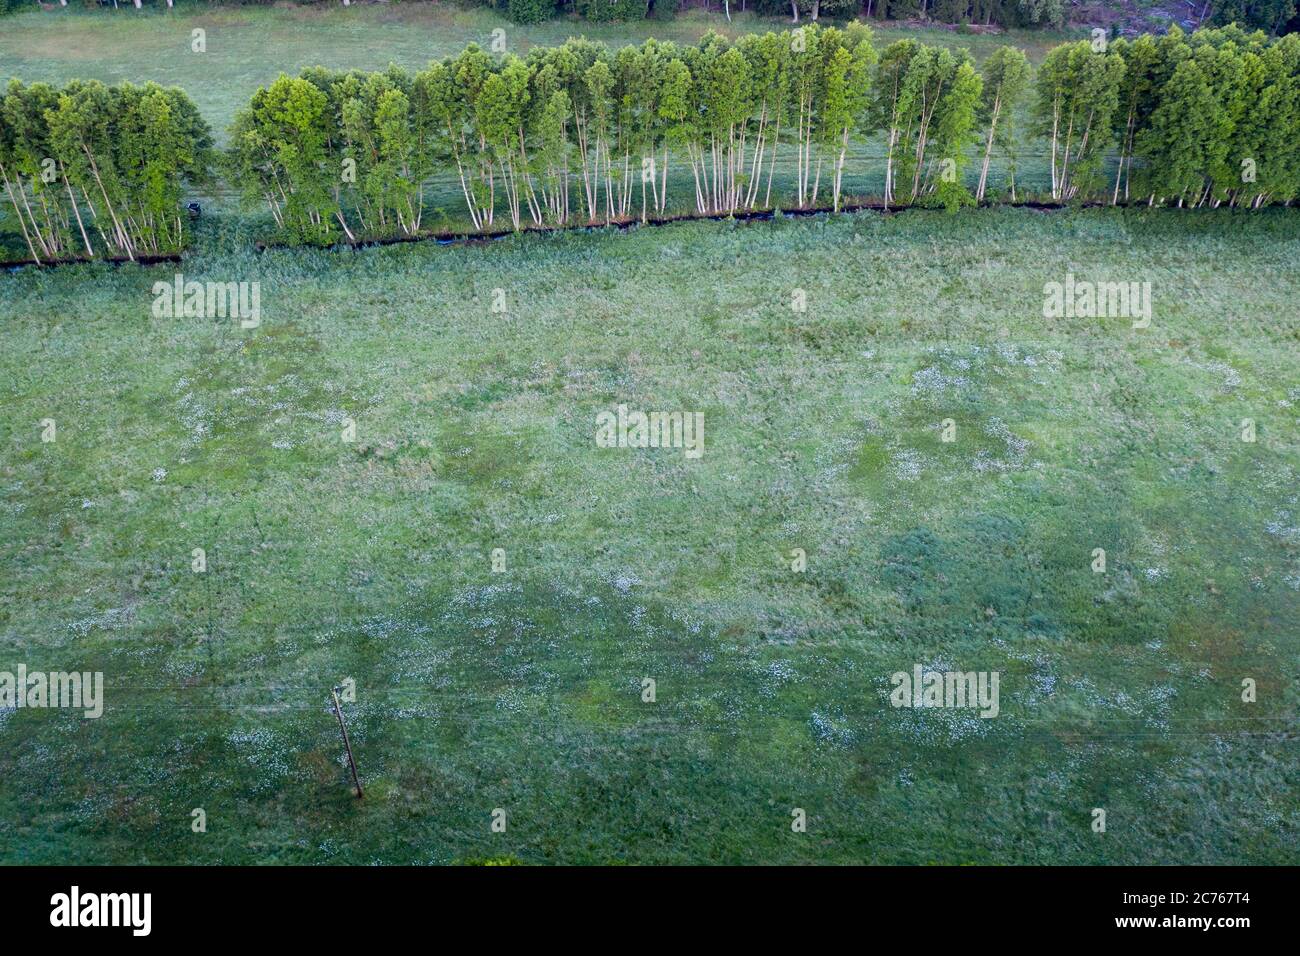 Germany, Friedensau, Bird's eye view of a forest Stock Photo